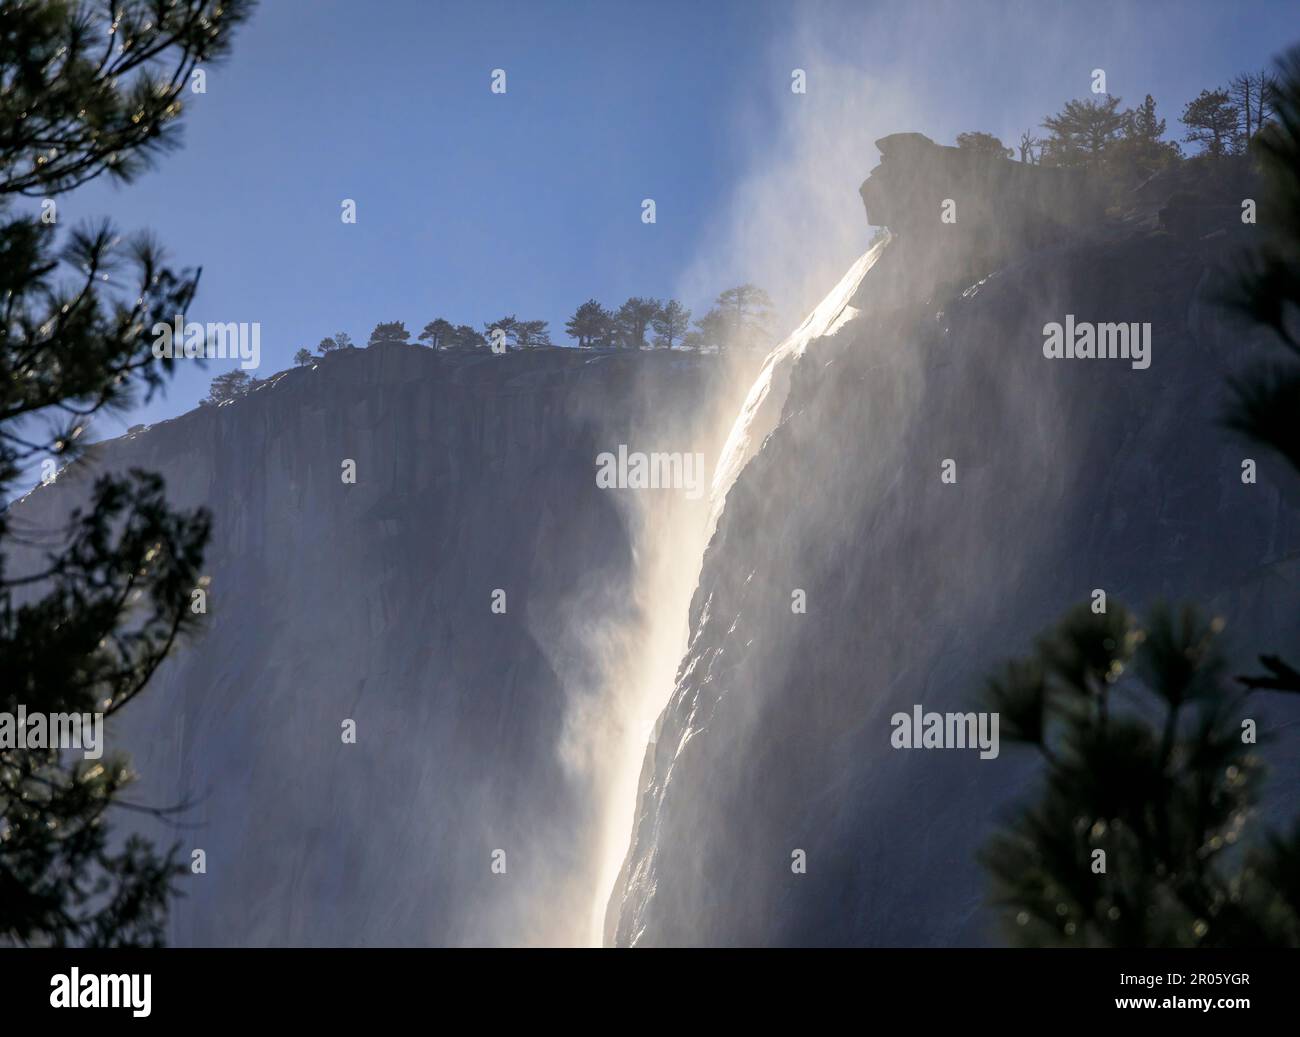 Malerischer Blick auf die berühmten Horsetail Falls mit aufsteigendem Nebel im Yosemite National Park, Sierra Nevada Bergkette in Kalifornien, USA Stockfoto